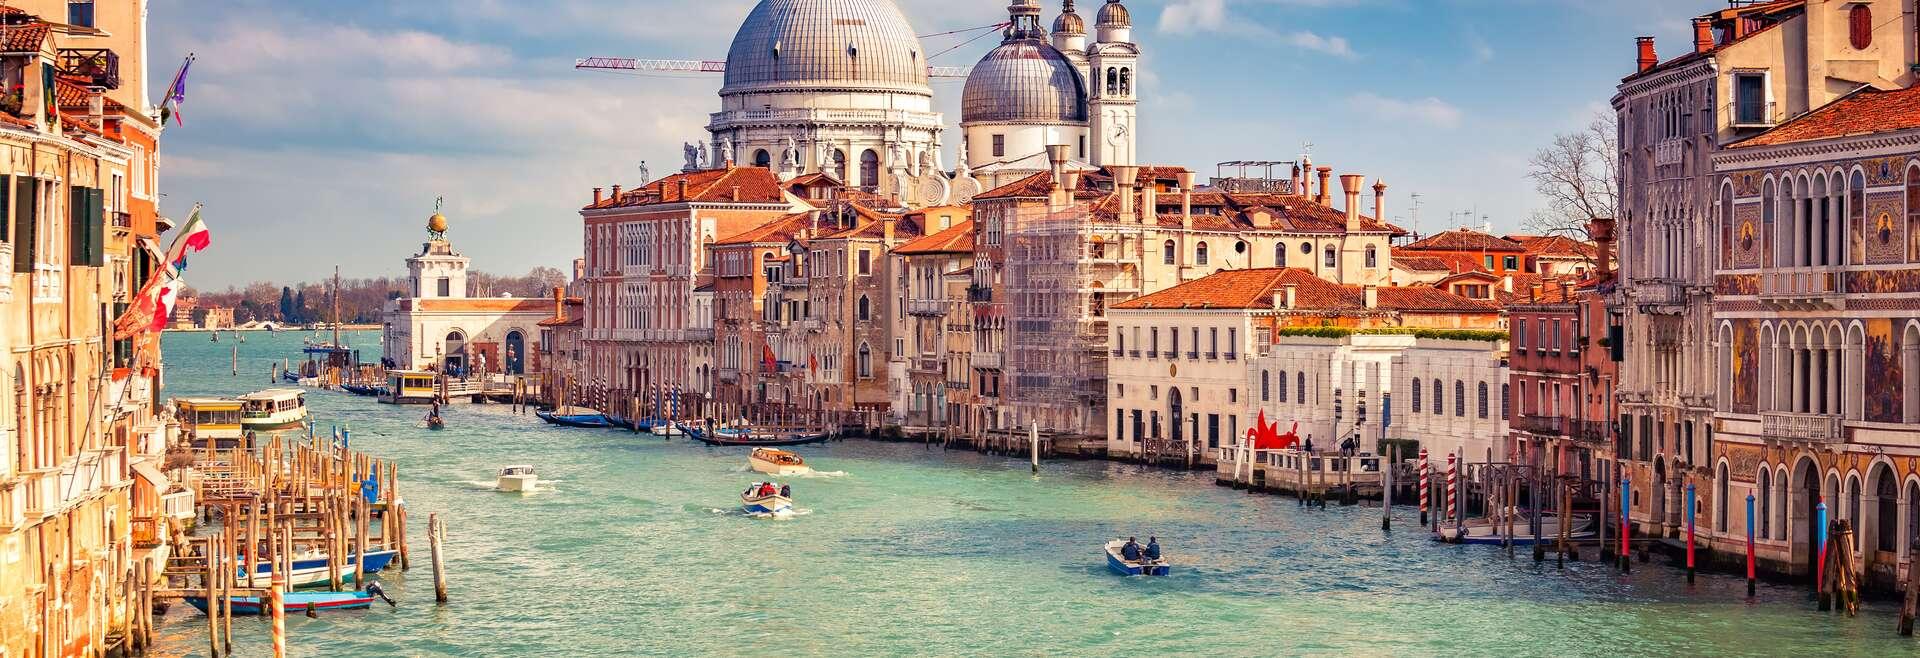 Sprachaufenthalt Italien, Venedig - Canale Grande